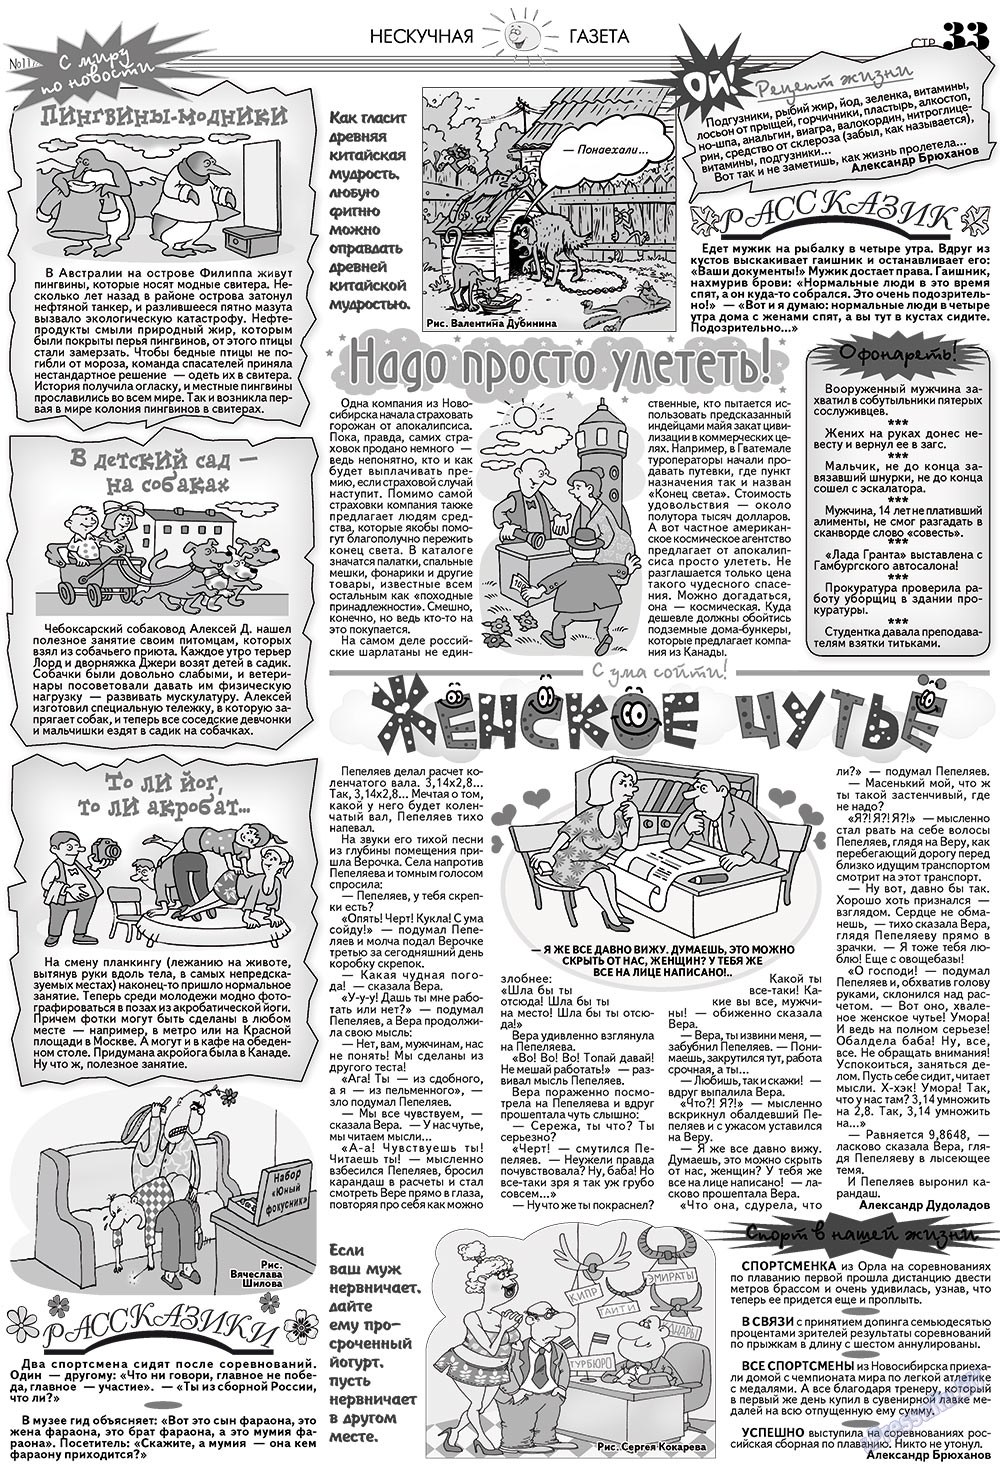 Нескучная газета (журнал). 2012 год, номер 11, стр. 33